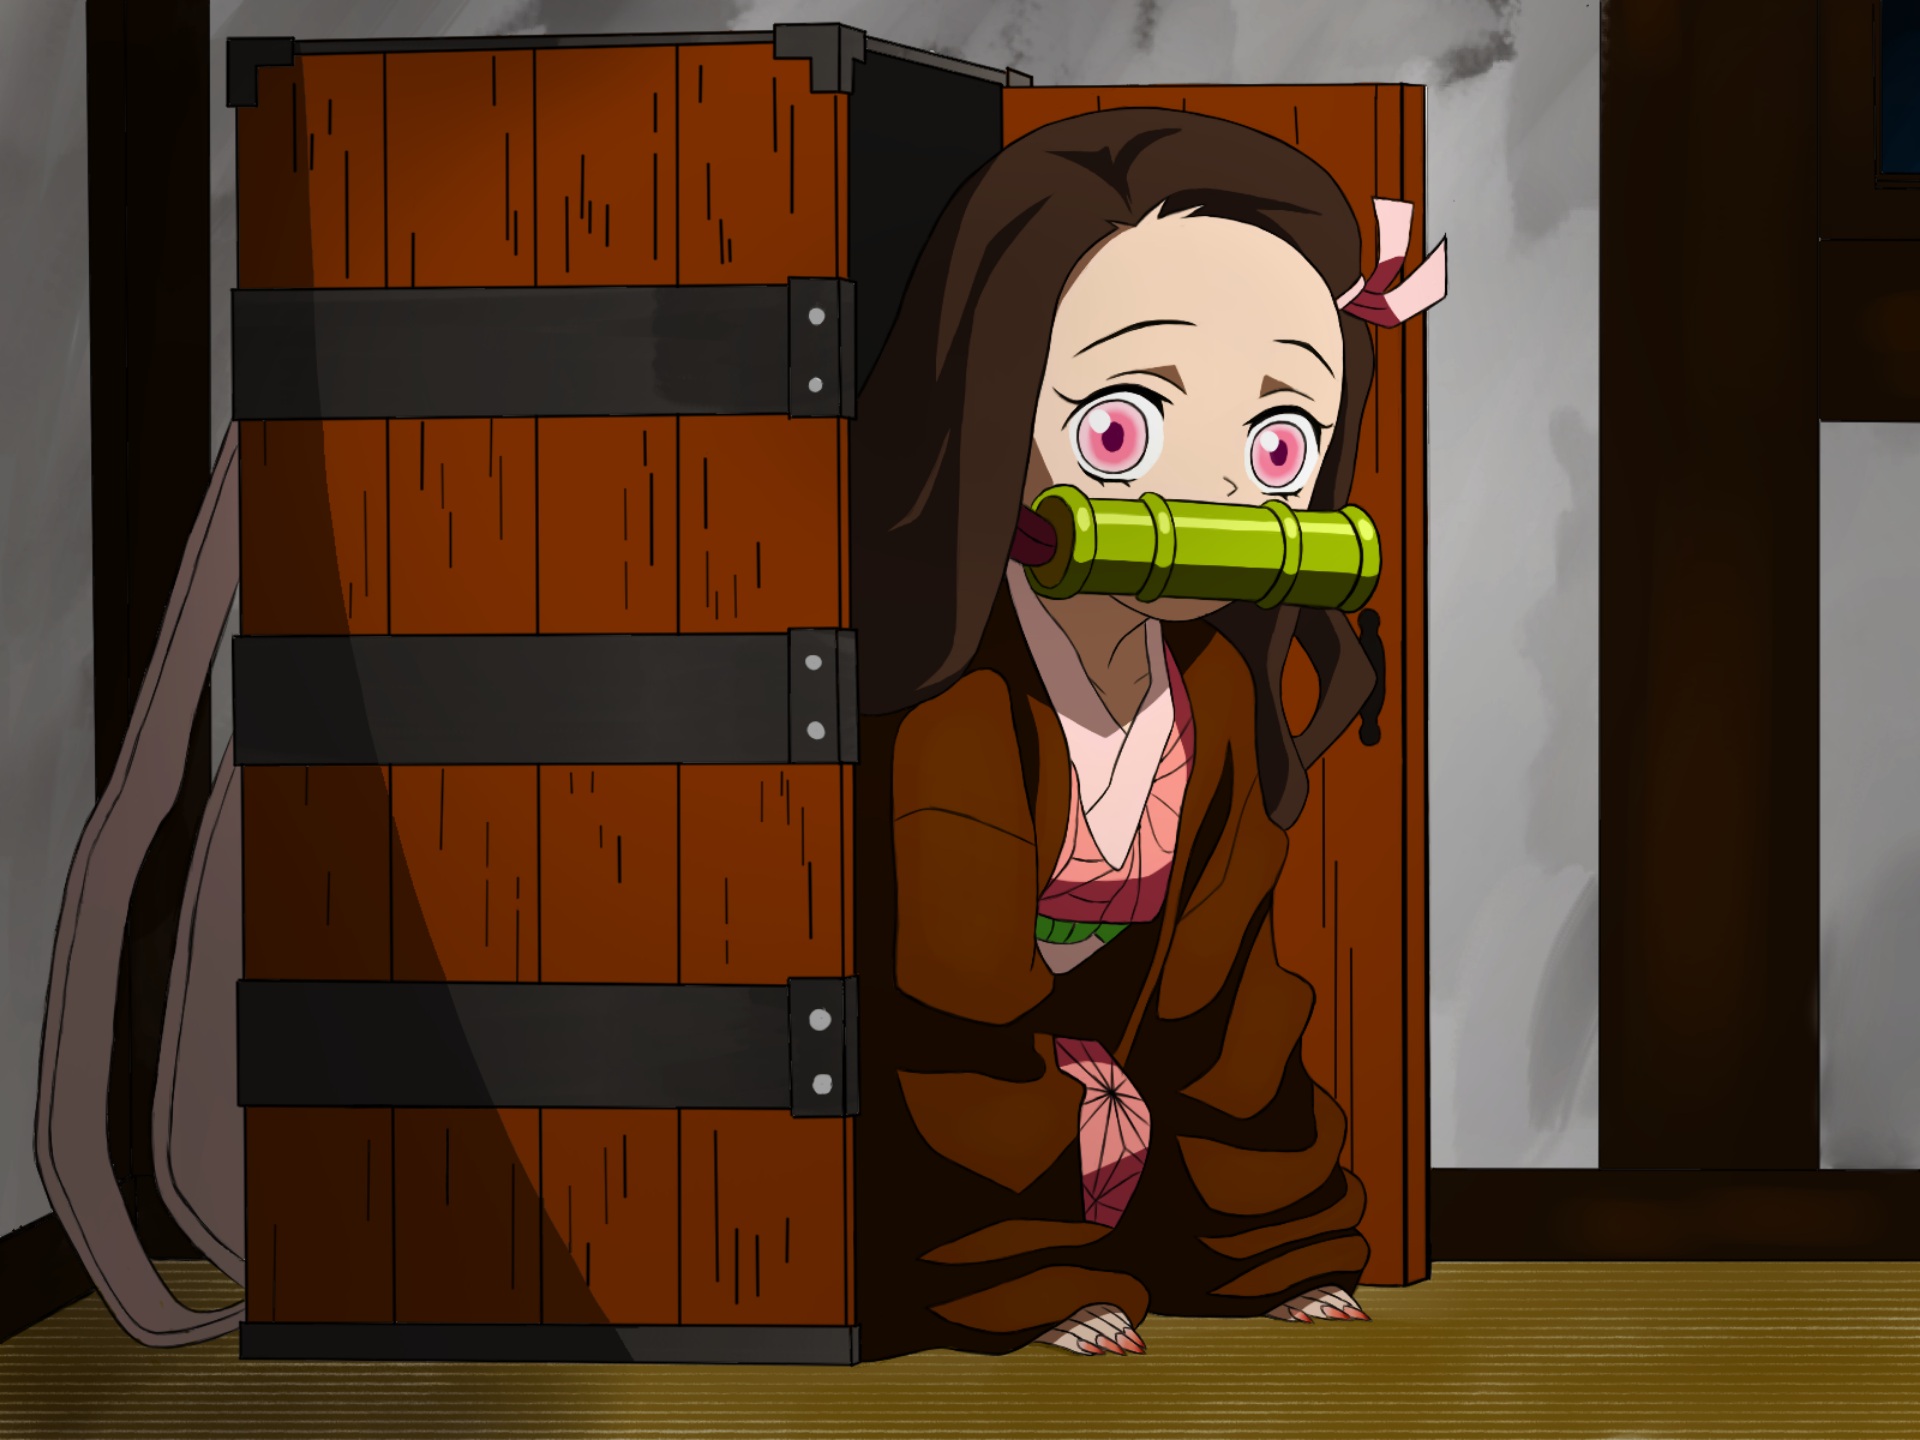 Download mobile wallpaper Anime, Nezuko Kamado, Demon Slayer: Kimetsu No Yaiba for free.